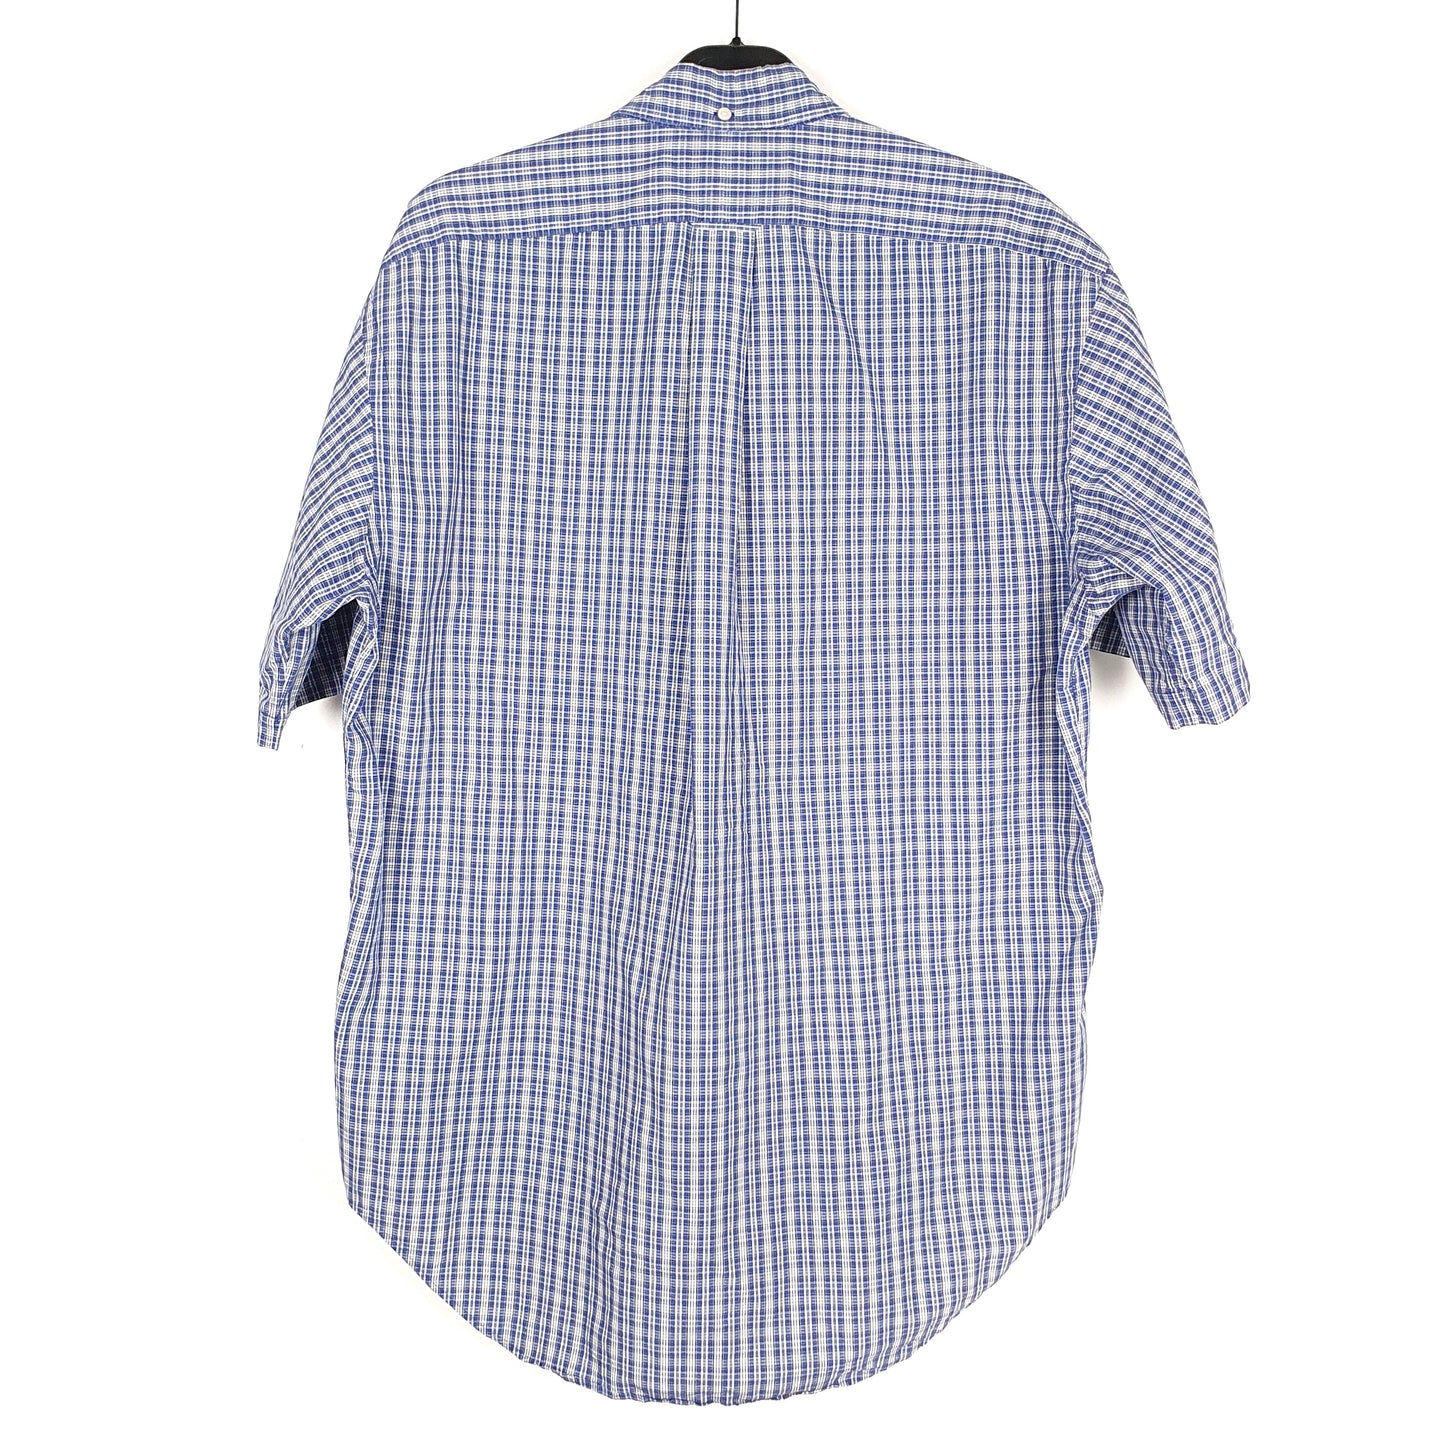 Polo Ralph Lauren Short Sleeve Regular Fit Check Shirt